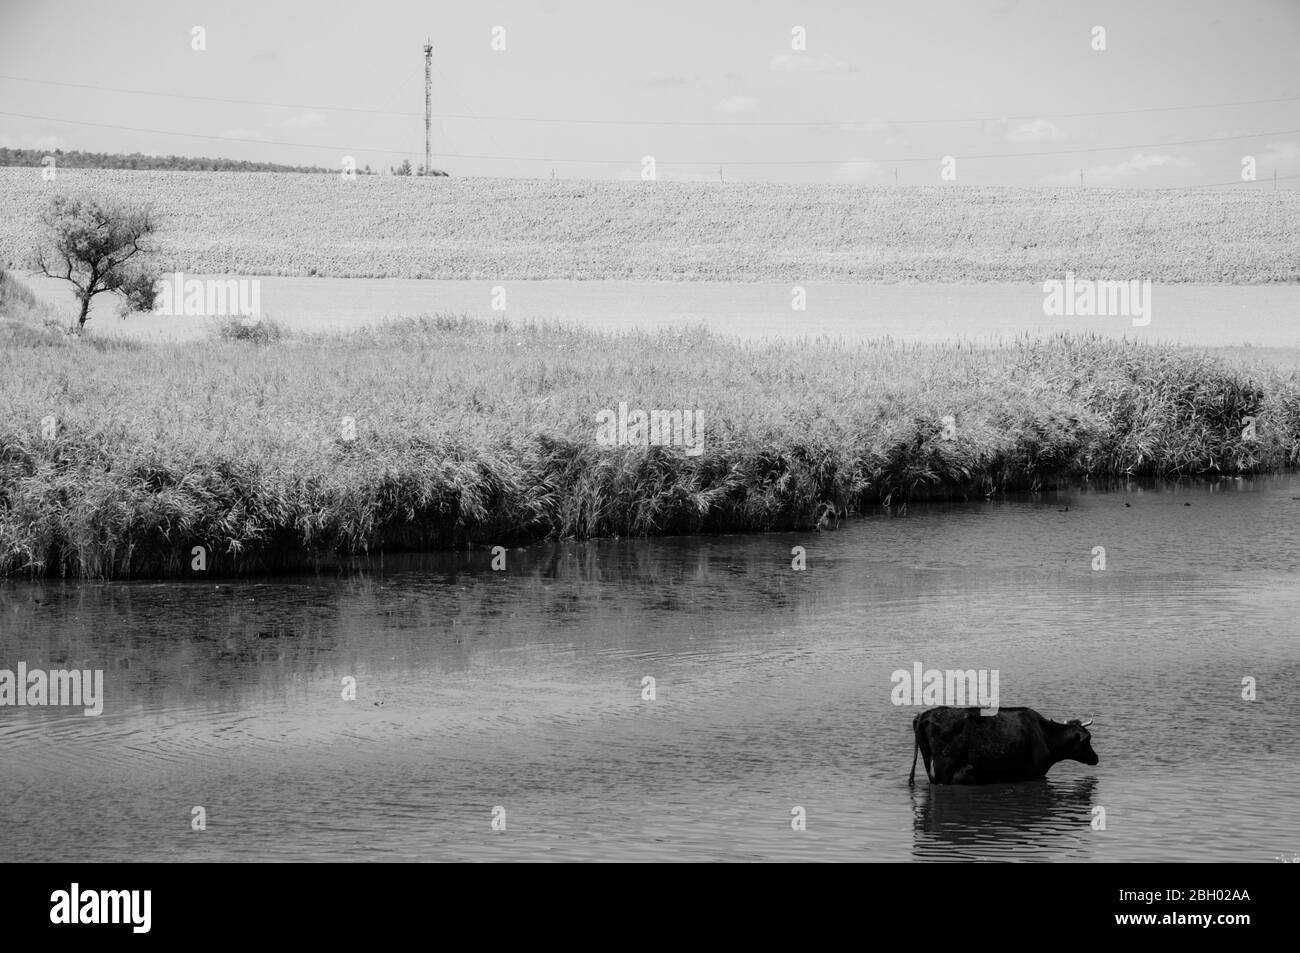 Foto in bianco e nero del pittoresco paesaggio del lago e della mucca nera bere acqua da stagno coltivato da canne fresche. Vista minima dell'acqua increspata Foto Stock